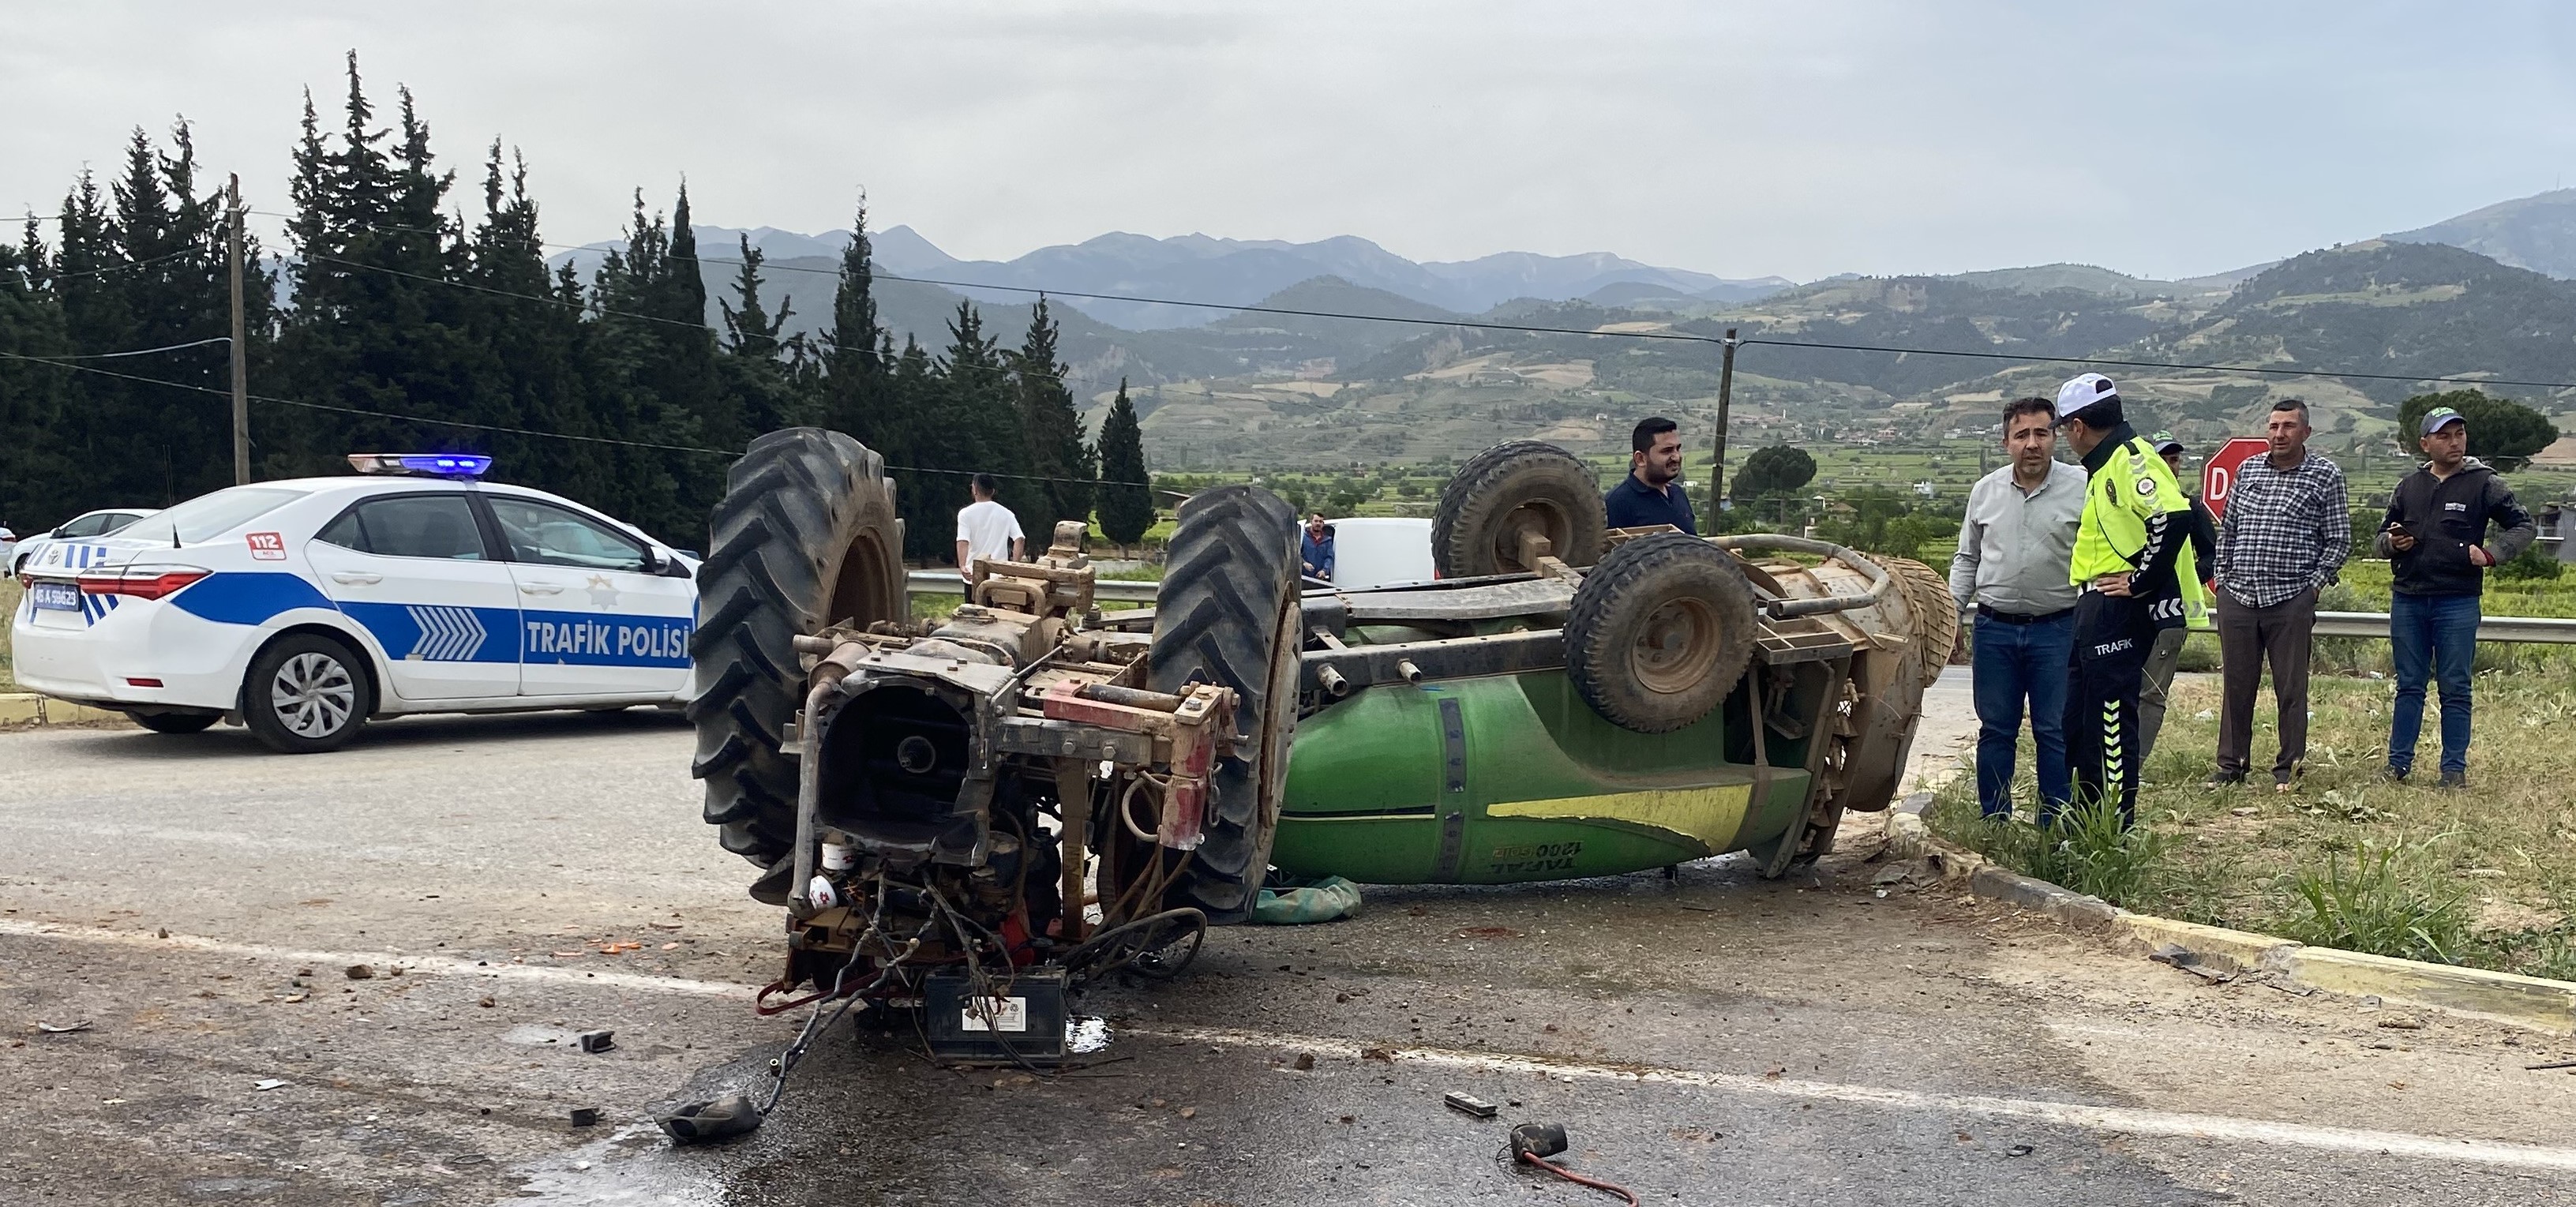 Manisa Otomobilin Çarptığı Traktör Ikiye Bölündü 2 Yaralı (2)